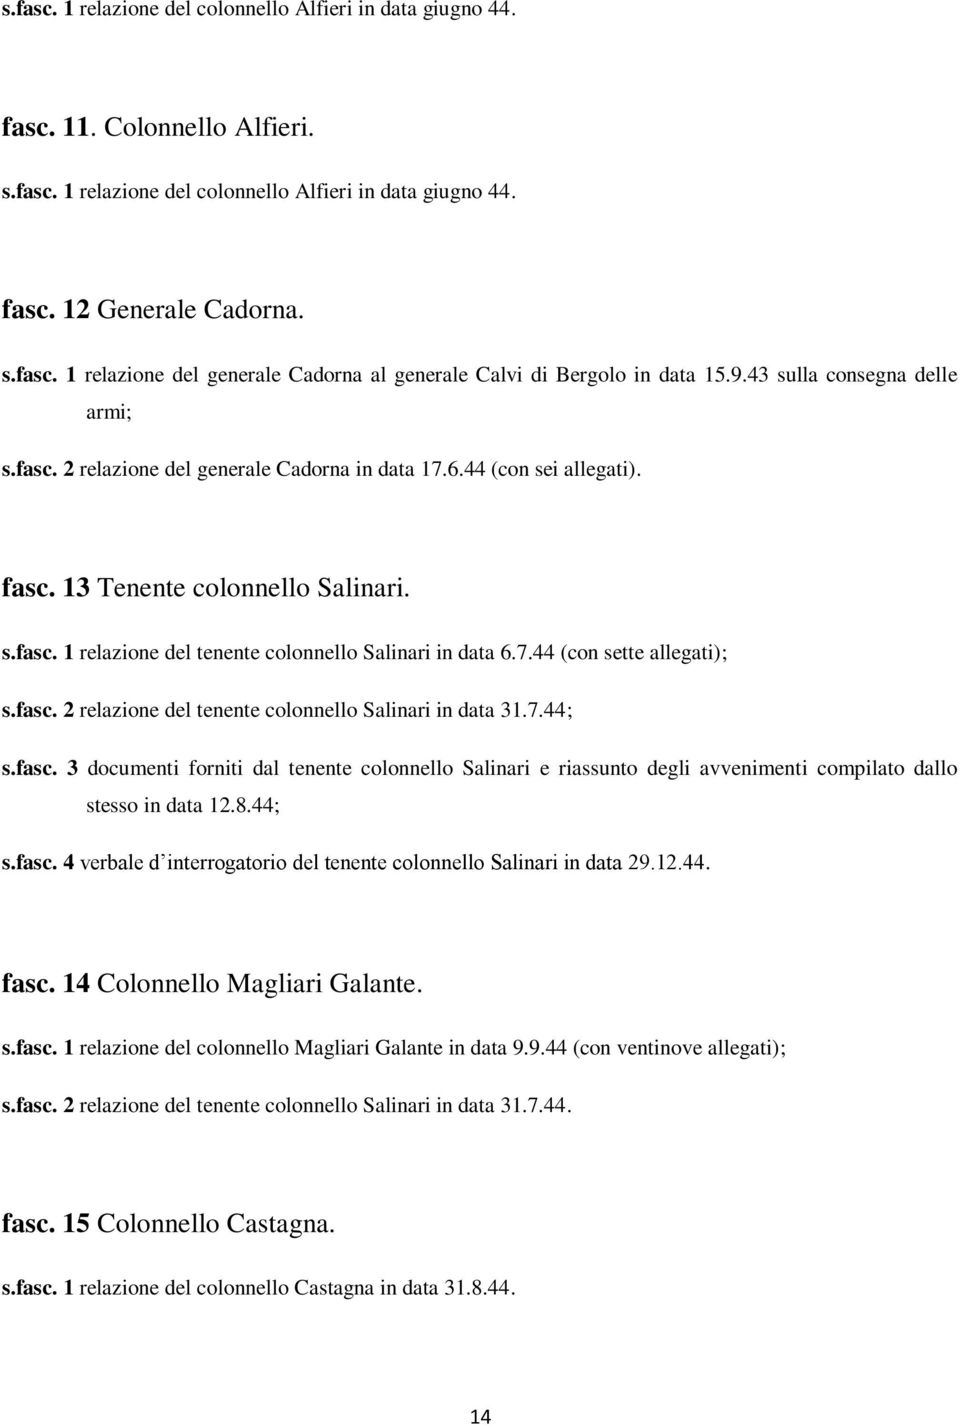 7.44 (con sette allegati); s.fasc. 2 relazione del tenente colonnello Salinari in data 31.7.44; s.fasc. 3 documenti forniti dal tenente colonnello Salinari e riassunto degli avvenimenti compilato dallo stesso in data 12.